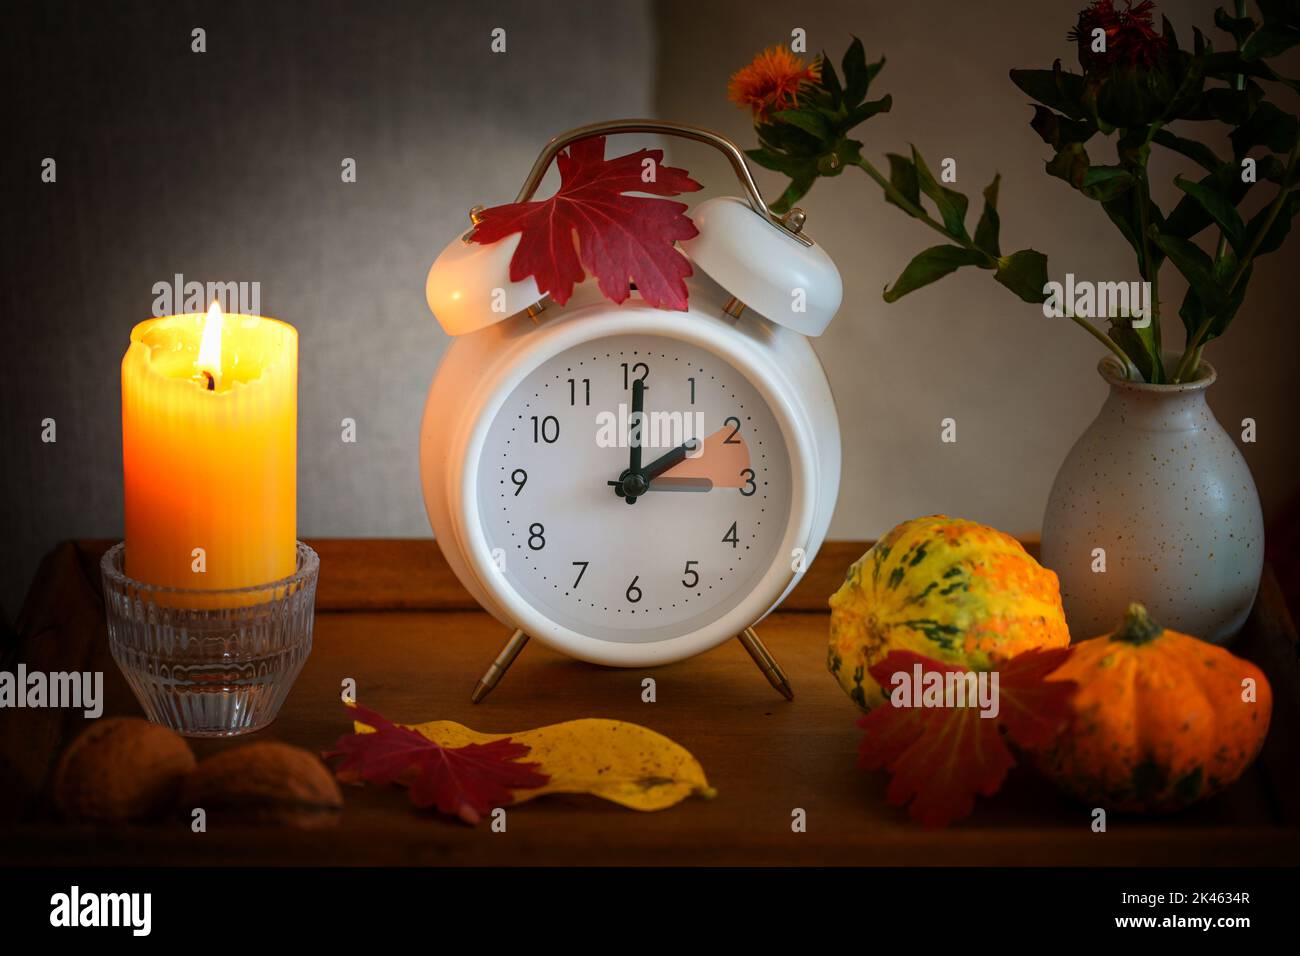 Retour, changement d'heure sur un réveil blanc après l'heure d'été, bougie, feuilles et citrouilles comme décoration d'automne, foyer sélectionné Banque D'Images